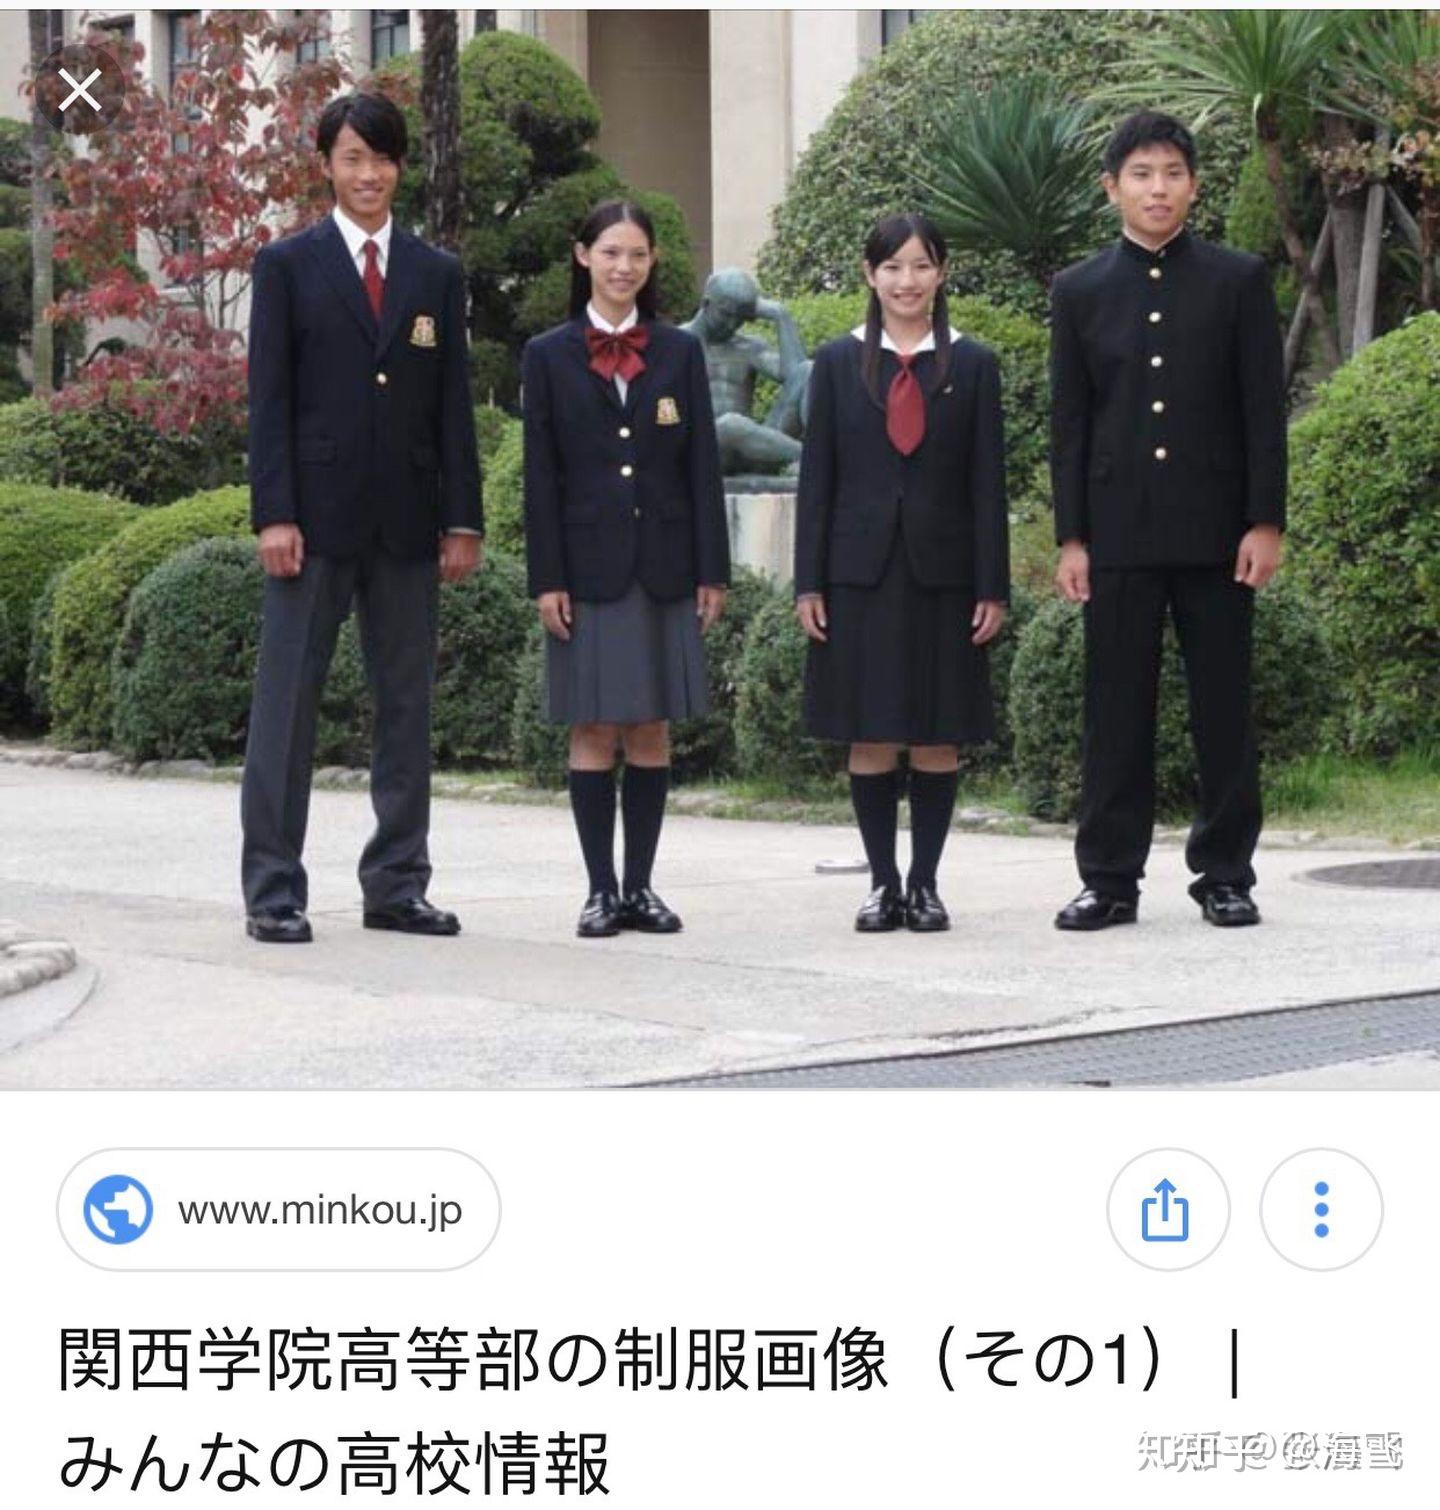 日本校服的长短之争90年代起日本校服迎来一个令人担忧的趋势——越来